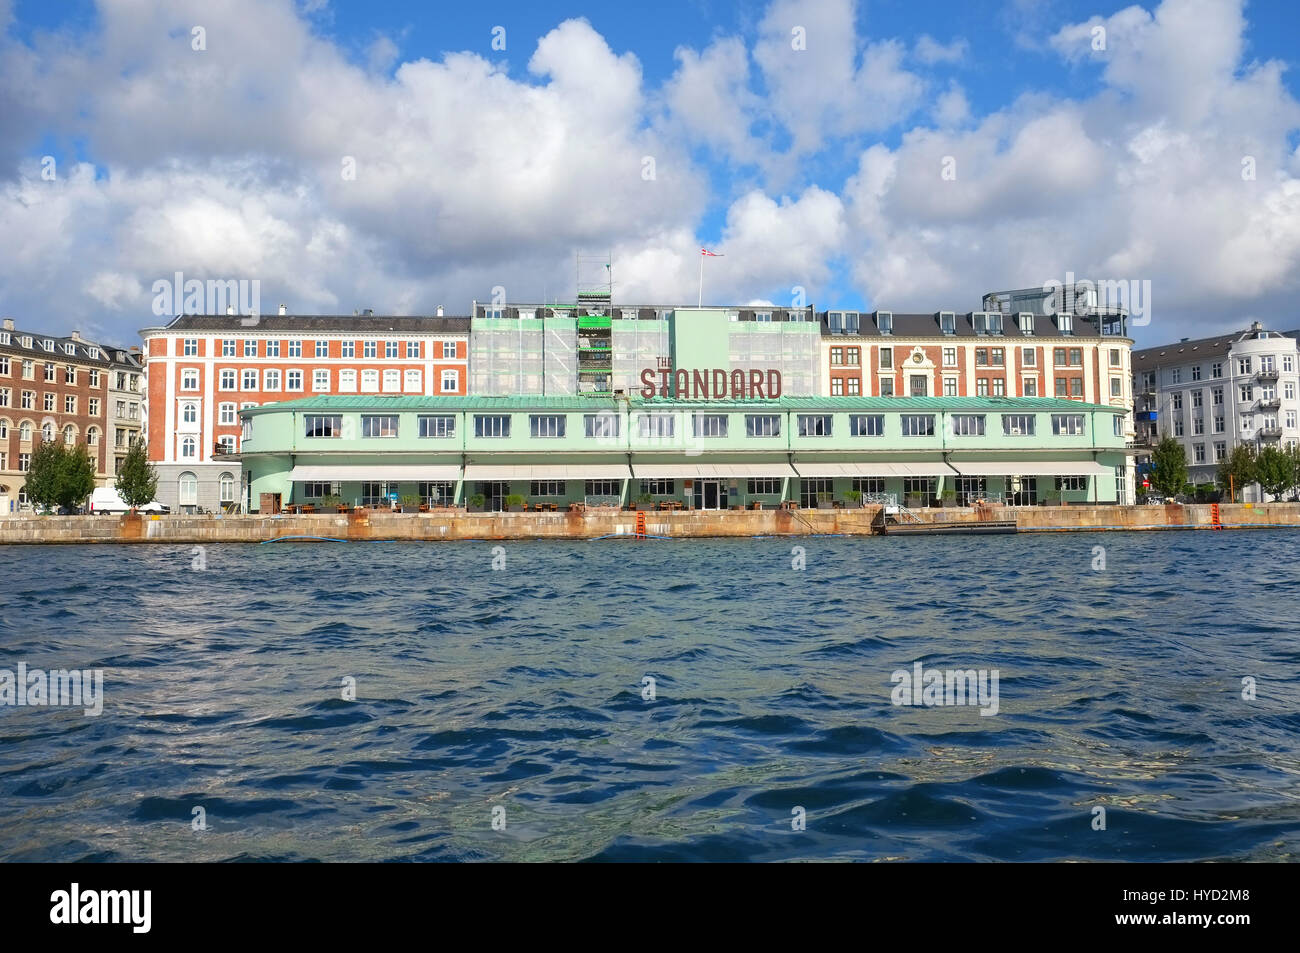 Copenhague, Danemark - août 22, 2014 : Un restaunt 'Standard' complexes sur l'Havnegade. C'est un ancien custom house et du terminal de ferries. Il a été conçu Banque D'Images